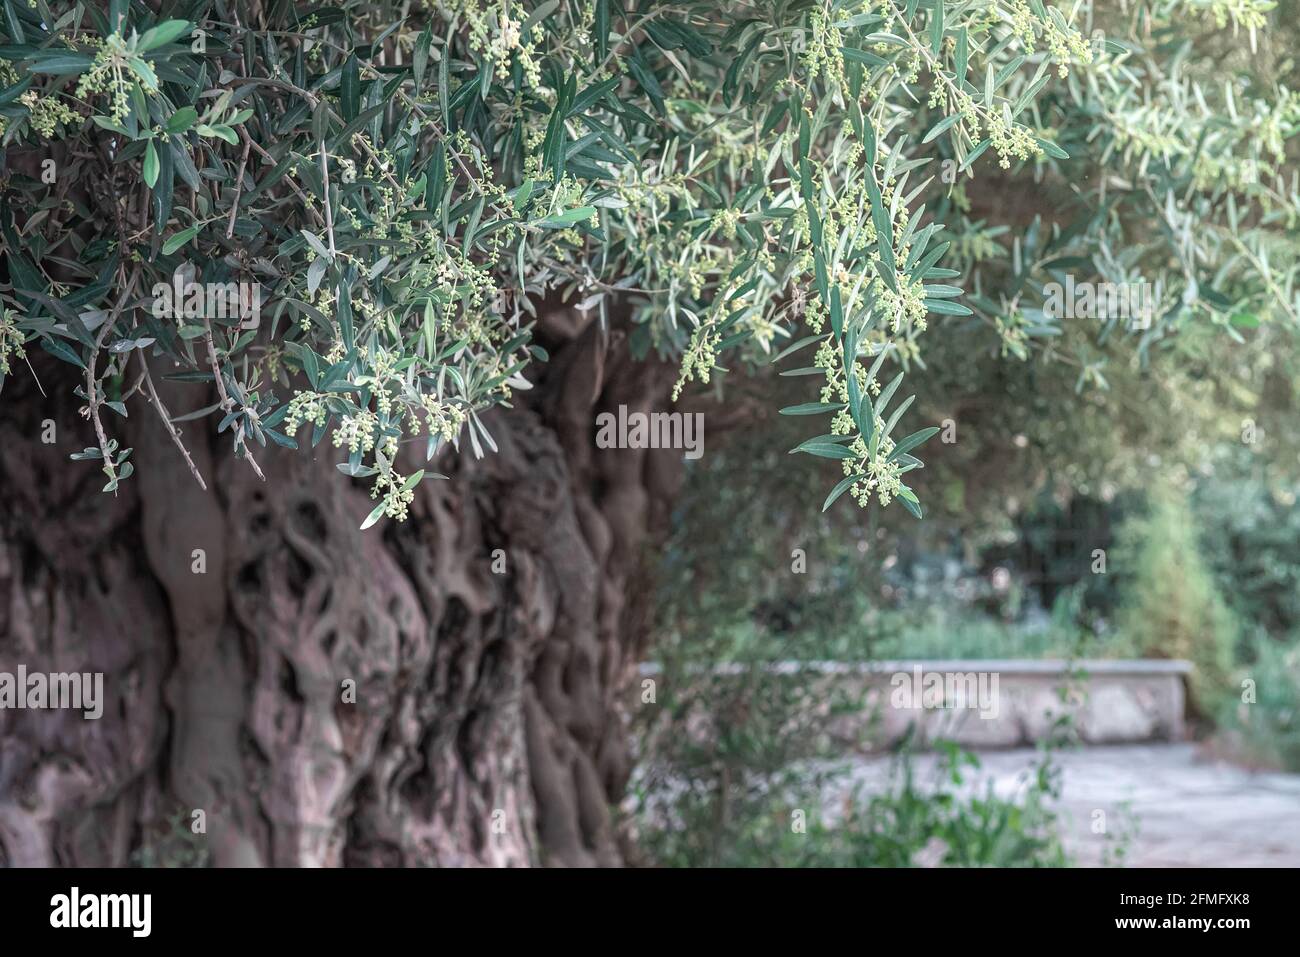 Alter Olivenbaum mit deformierten Rinden, die im Frühling blühen Stockfoto